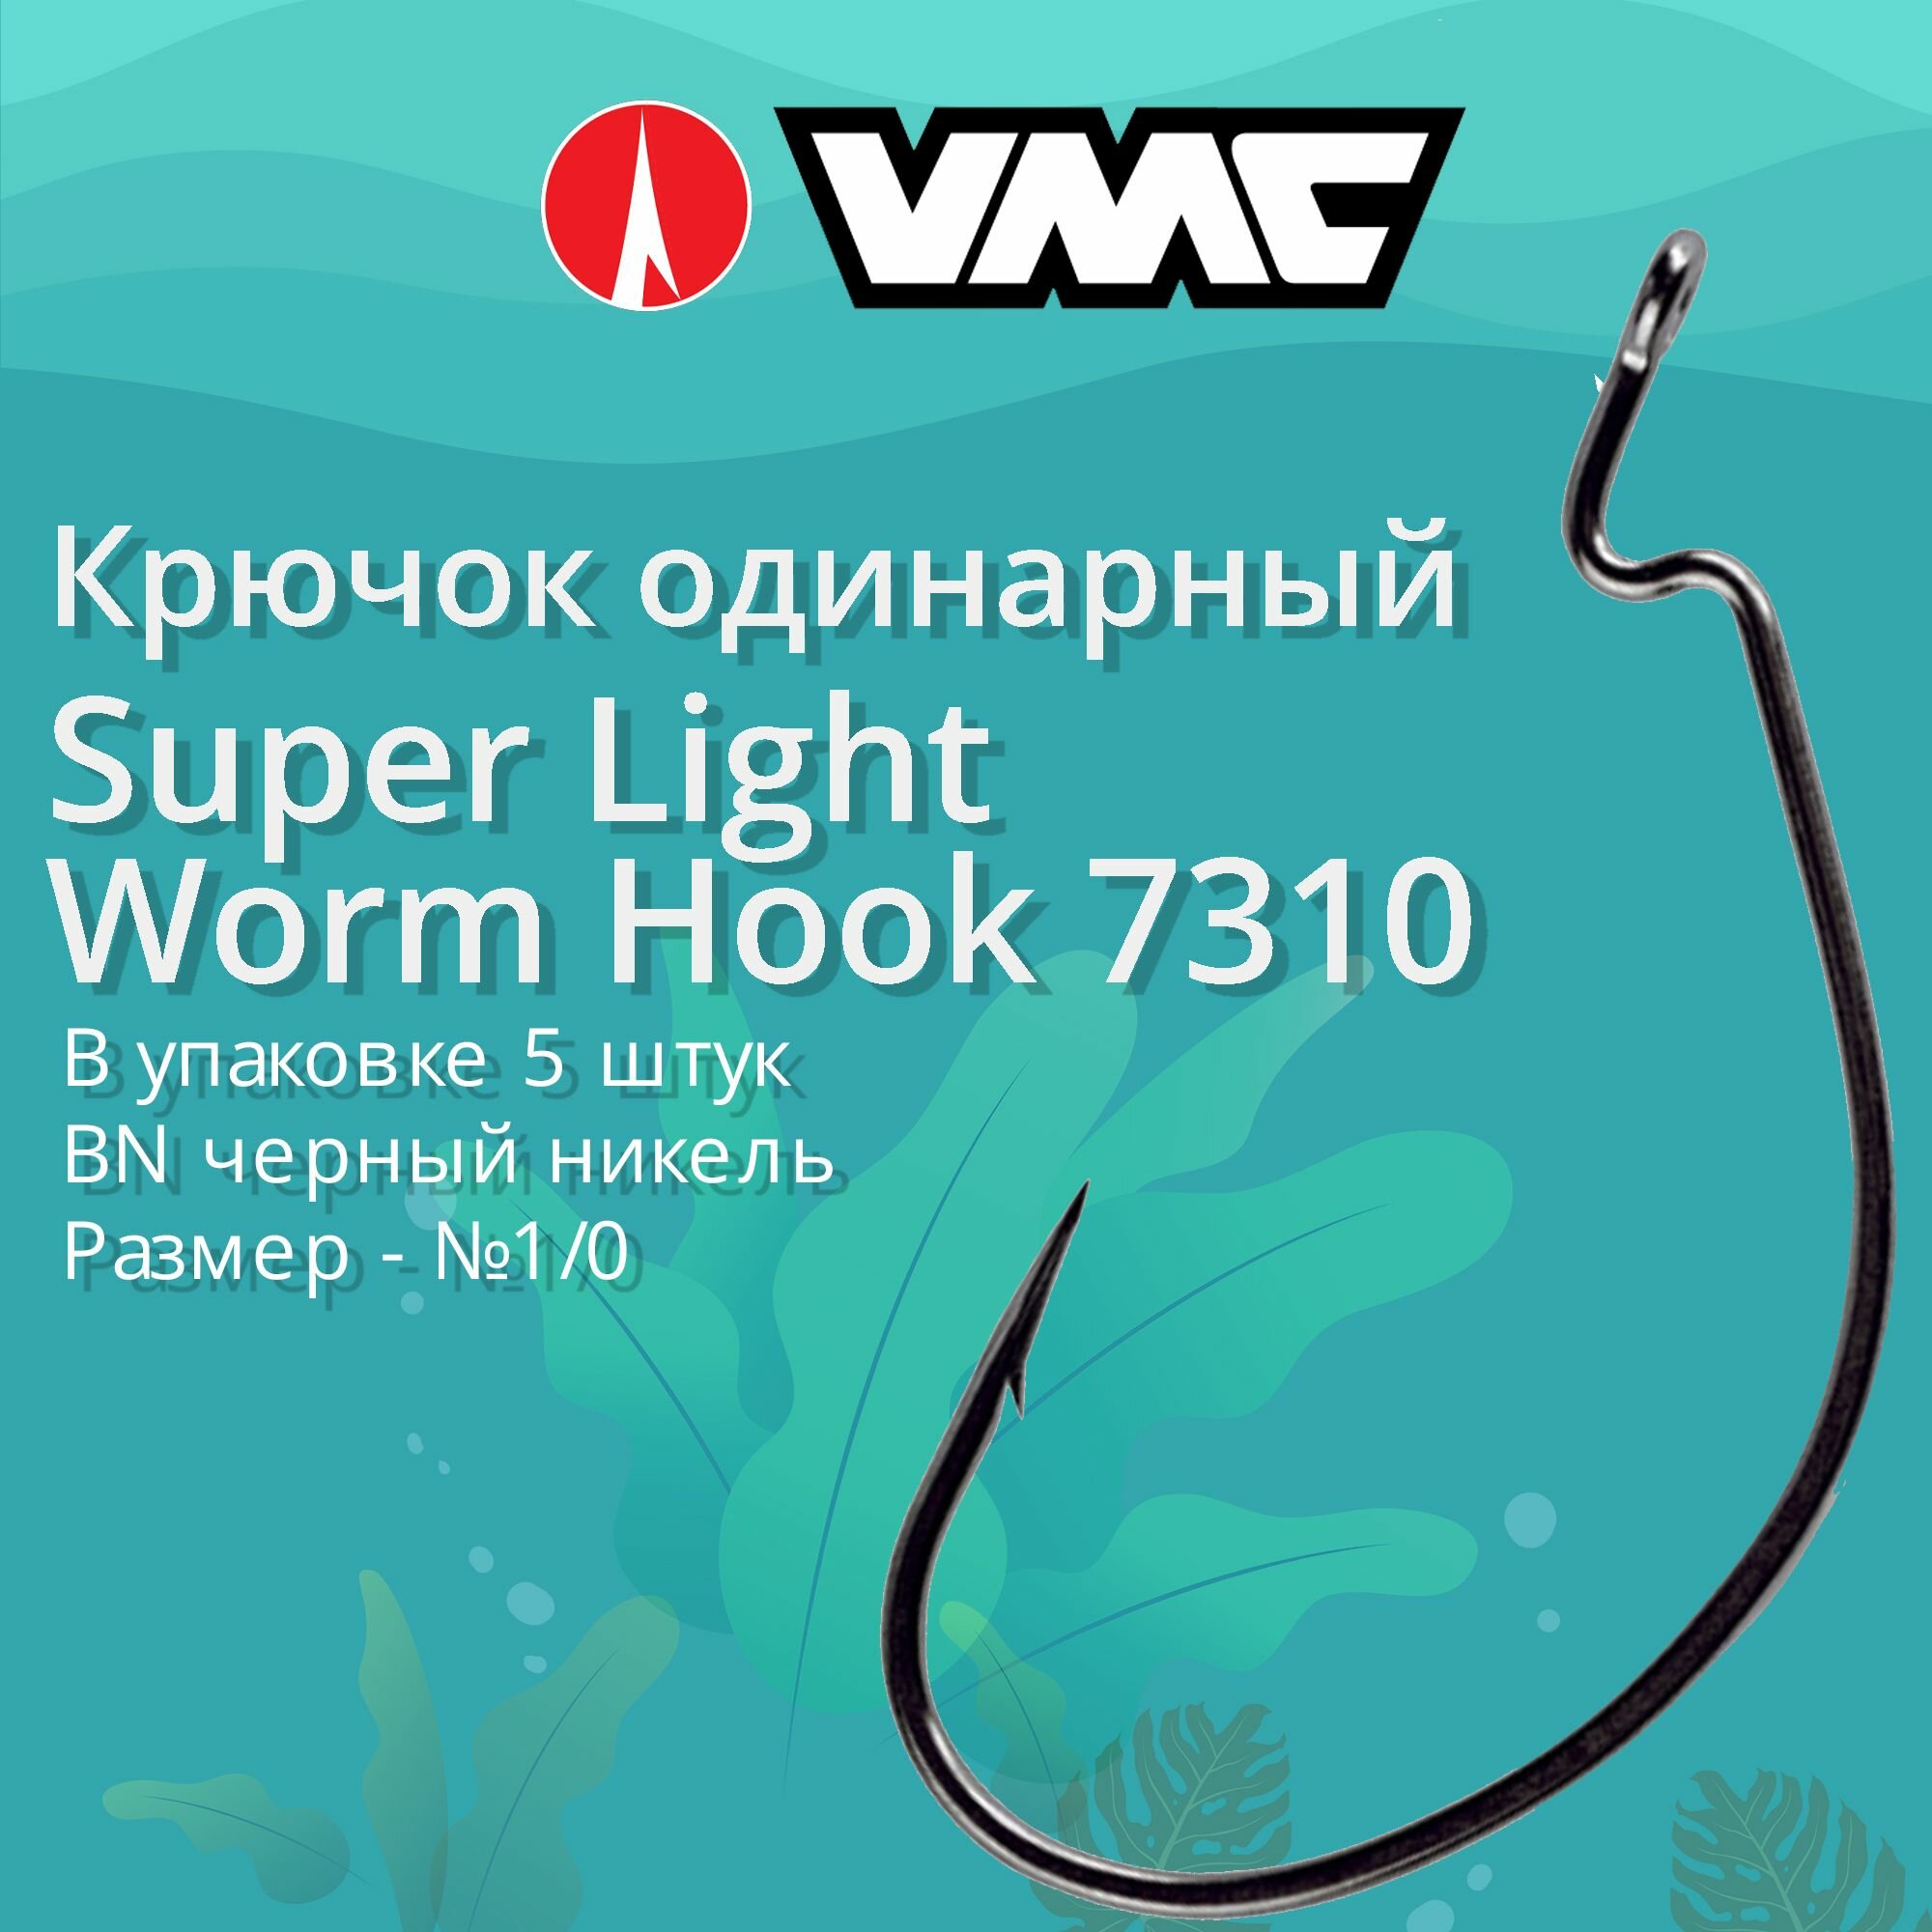 Крючки для рыбалки (одинарный) VMC Super Light Worm Hook офсетный 7310 BN (черн. никель) №1/0 упаковка 5 штук